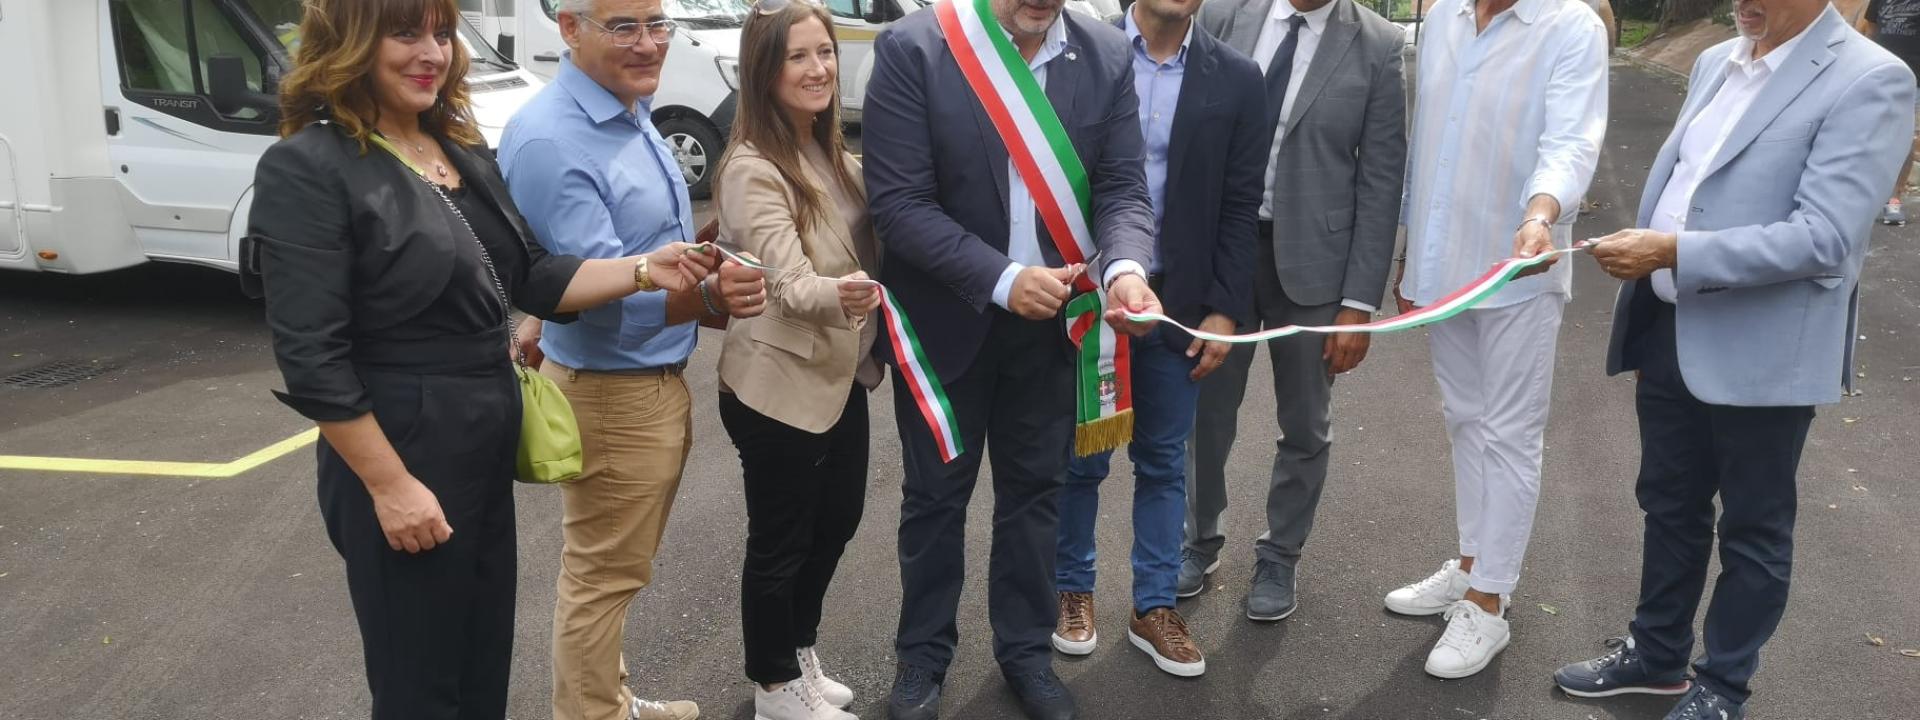 Marche - Sarnano, inaugurata ufficialmente la nuova area camper